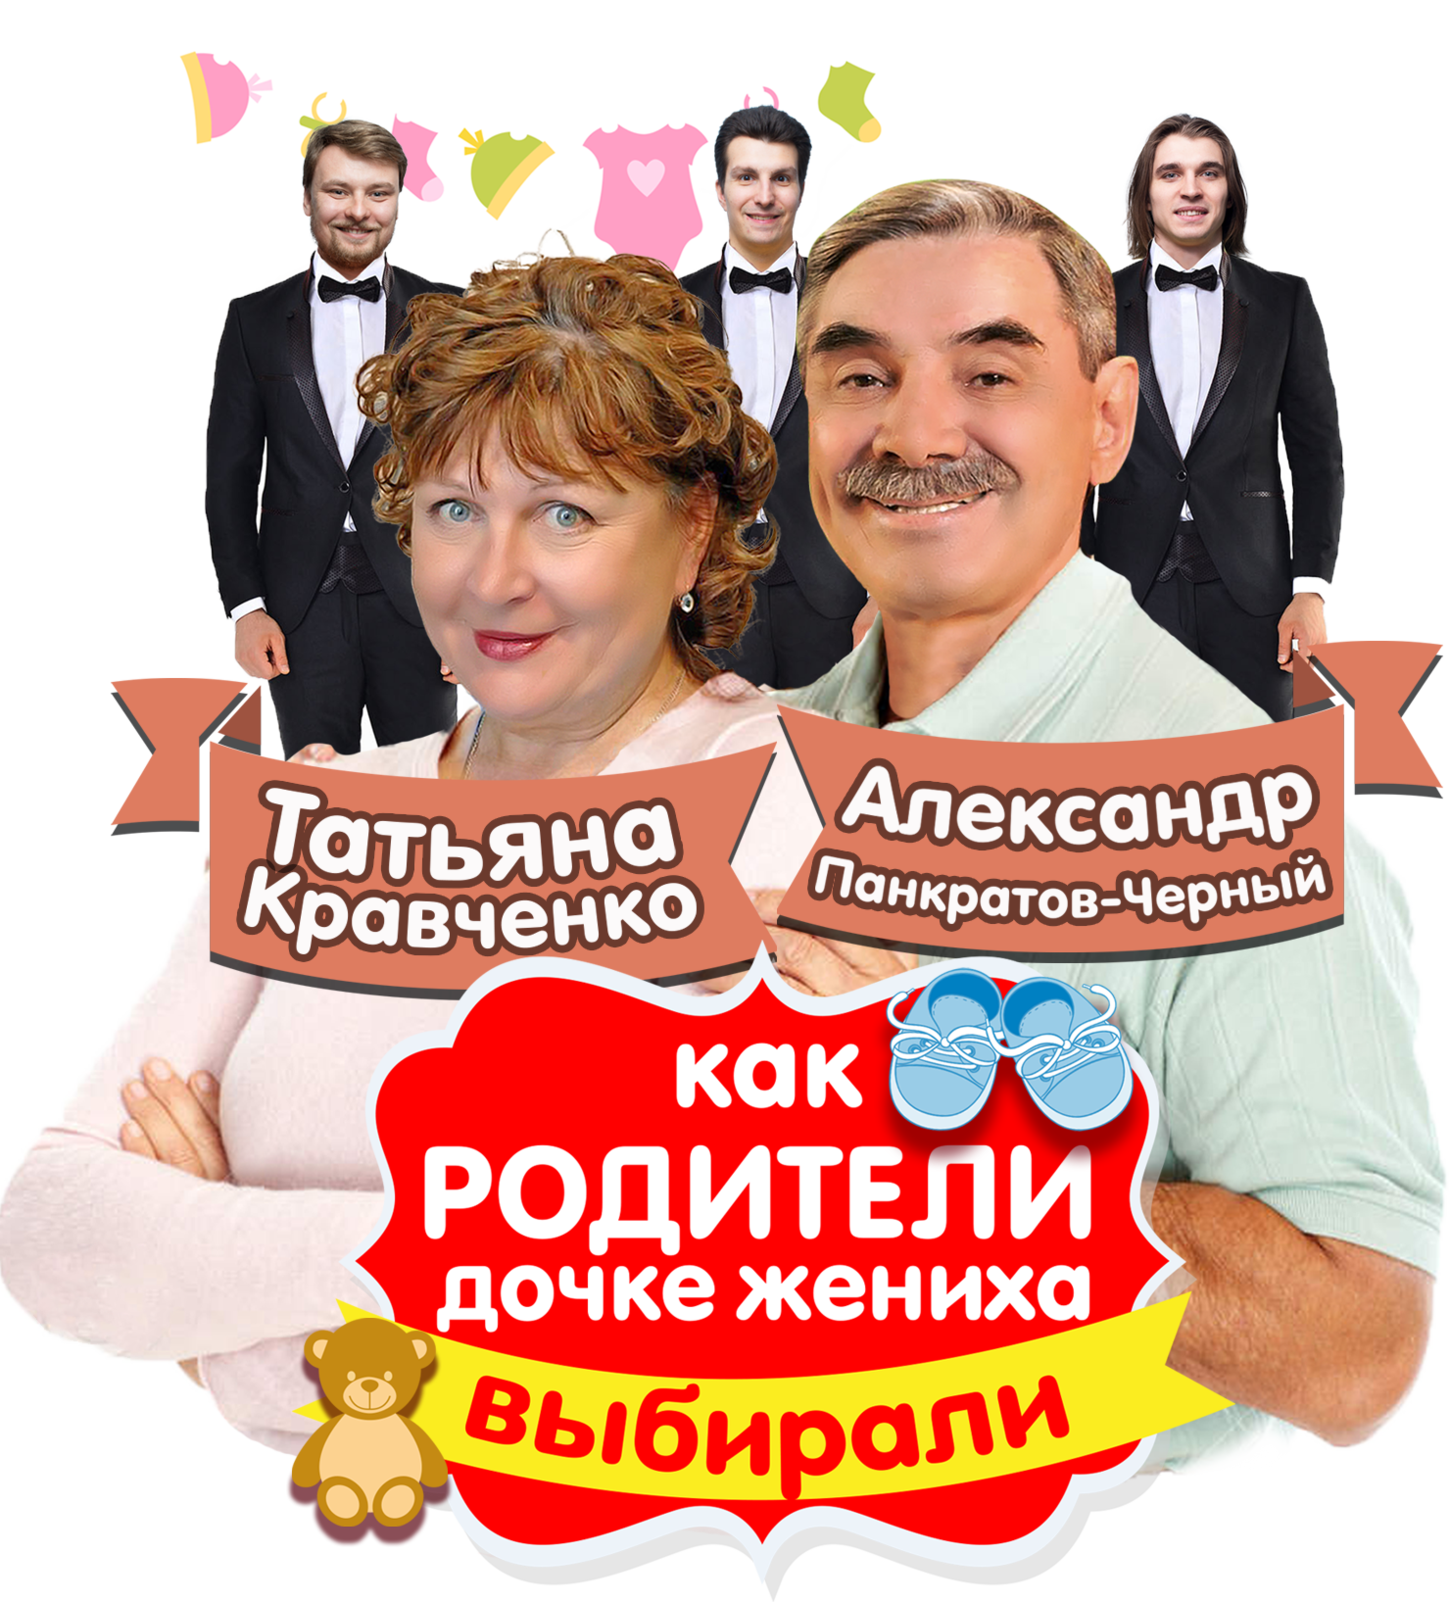 Спектакль с Панкратовым черным и Татьяной Кравченко. Женихи по объявлению отзывы